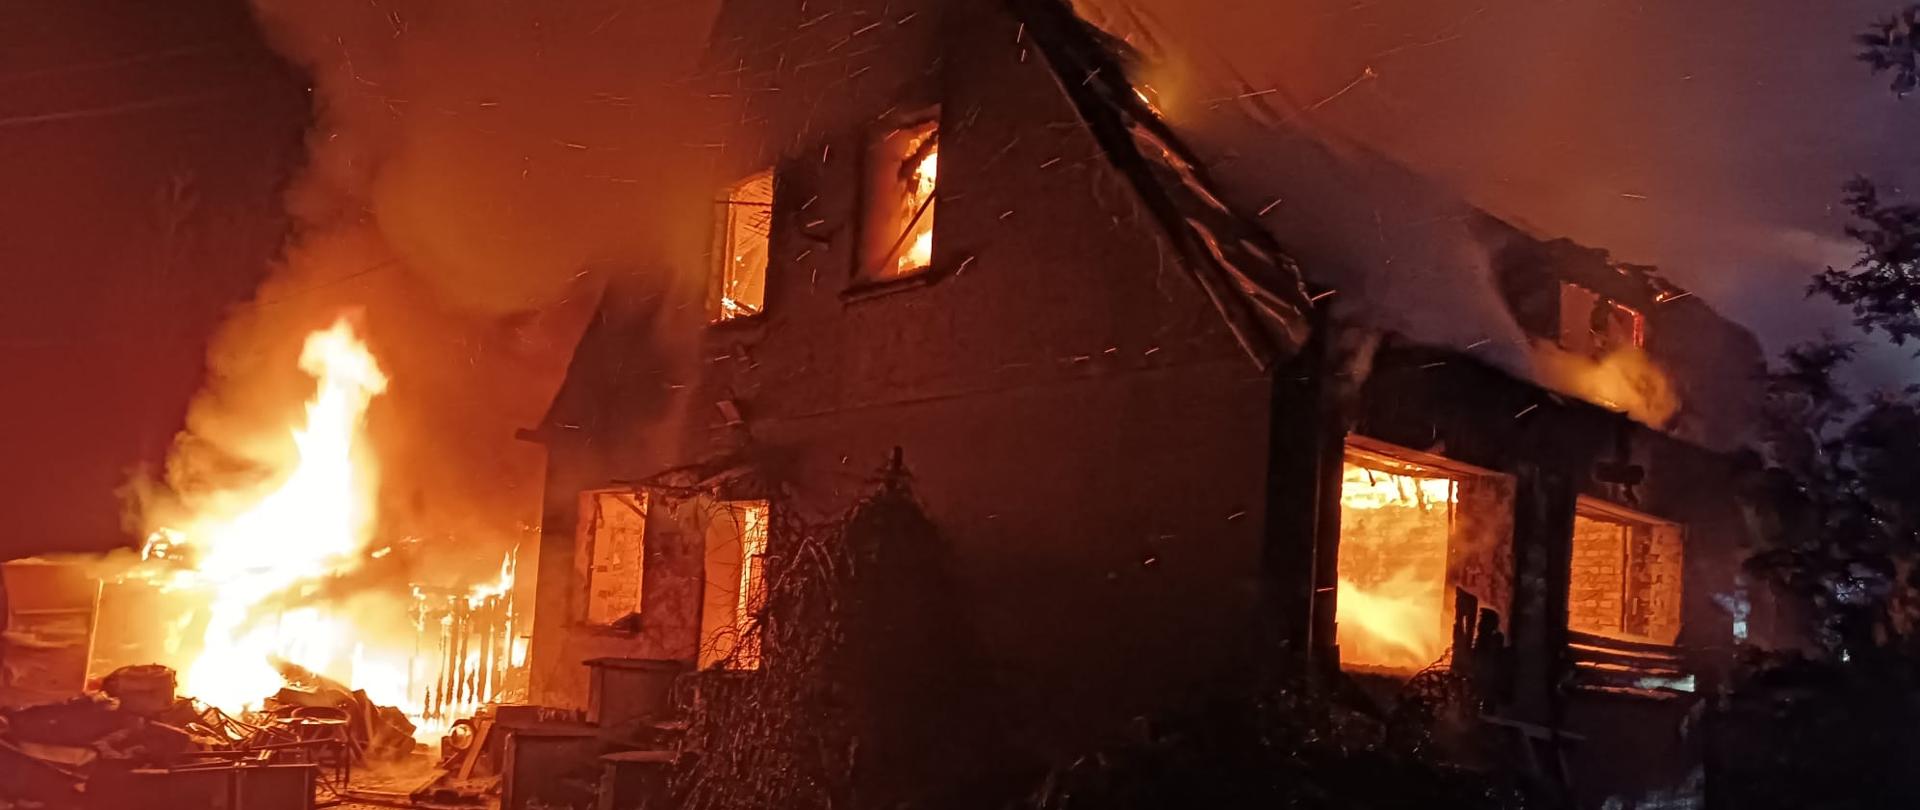 Płonący budynek mieszkalny. Ogień trawi całe jego wnętrze wraz z dachem. W górę unoszą się kłęby dymu. Ogniem objęta jest również stojąca przy obiekcie wiata.